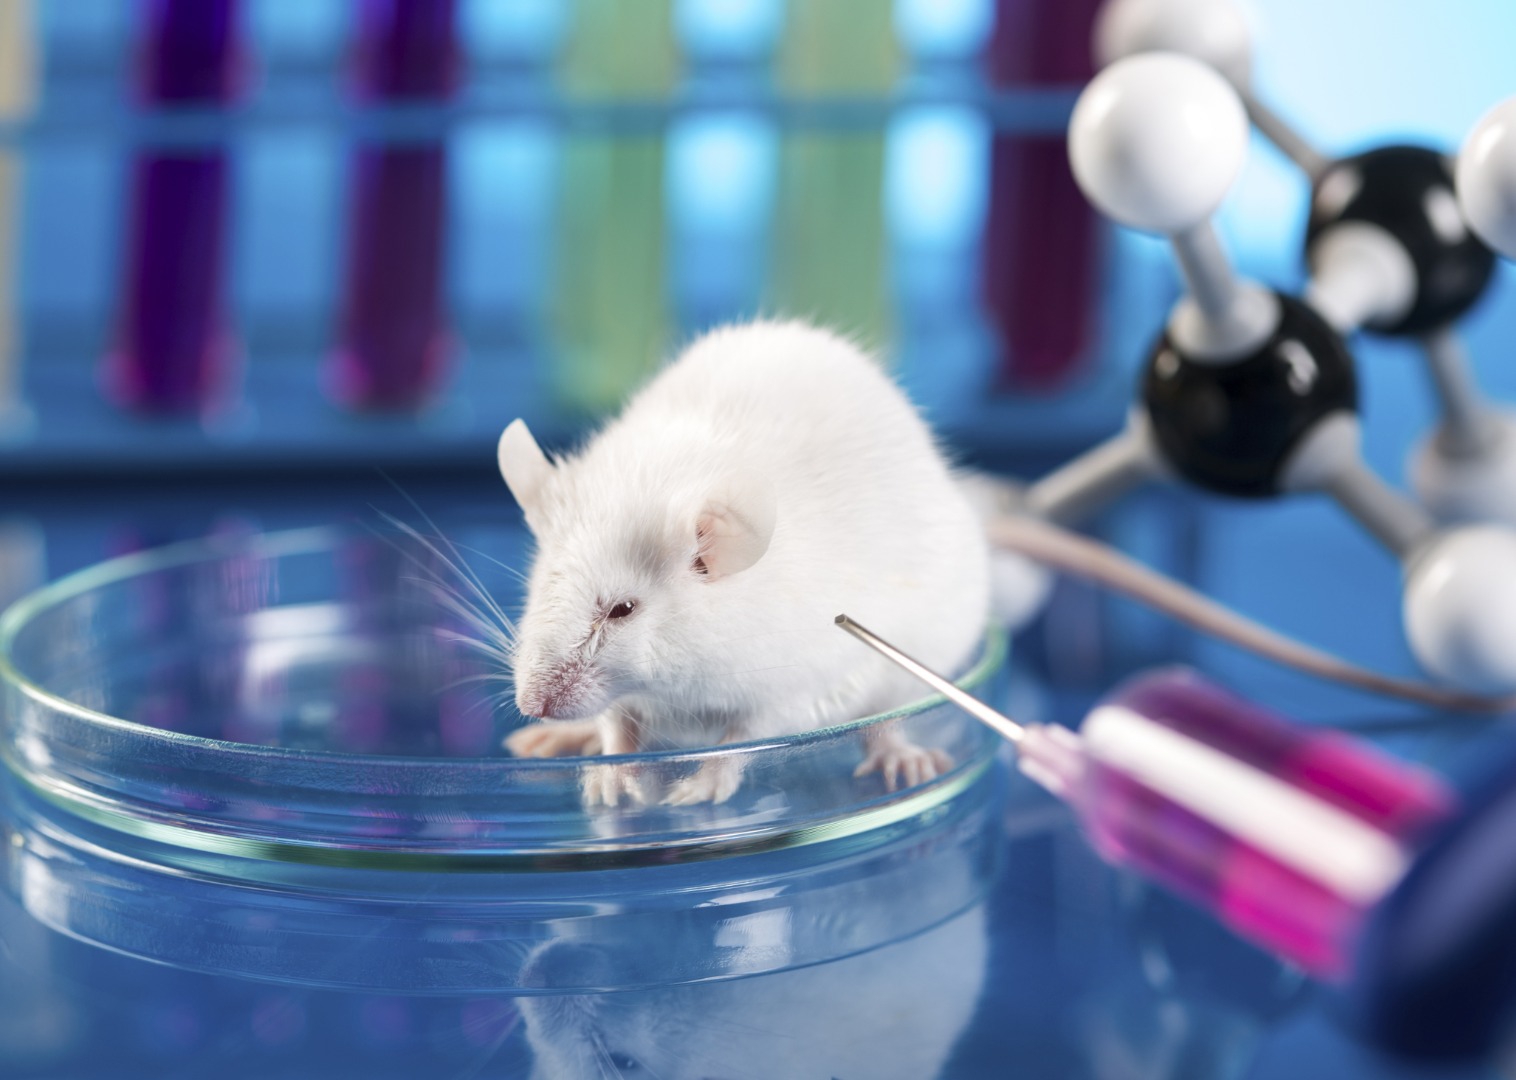 Bilim insanları, farelerdeki kanserli hücreleri kısa bir sürede yok eden yeni bir tedavi yöntemi geliştirdi